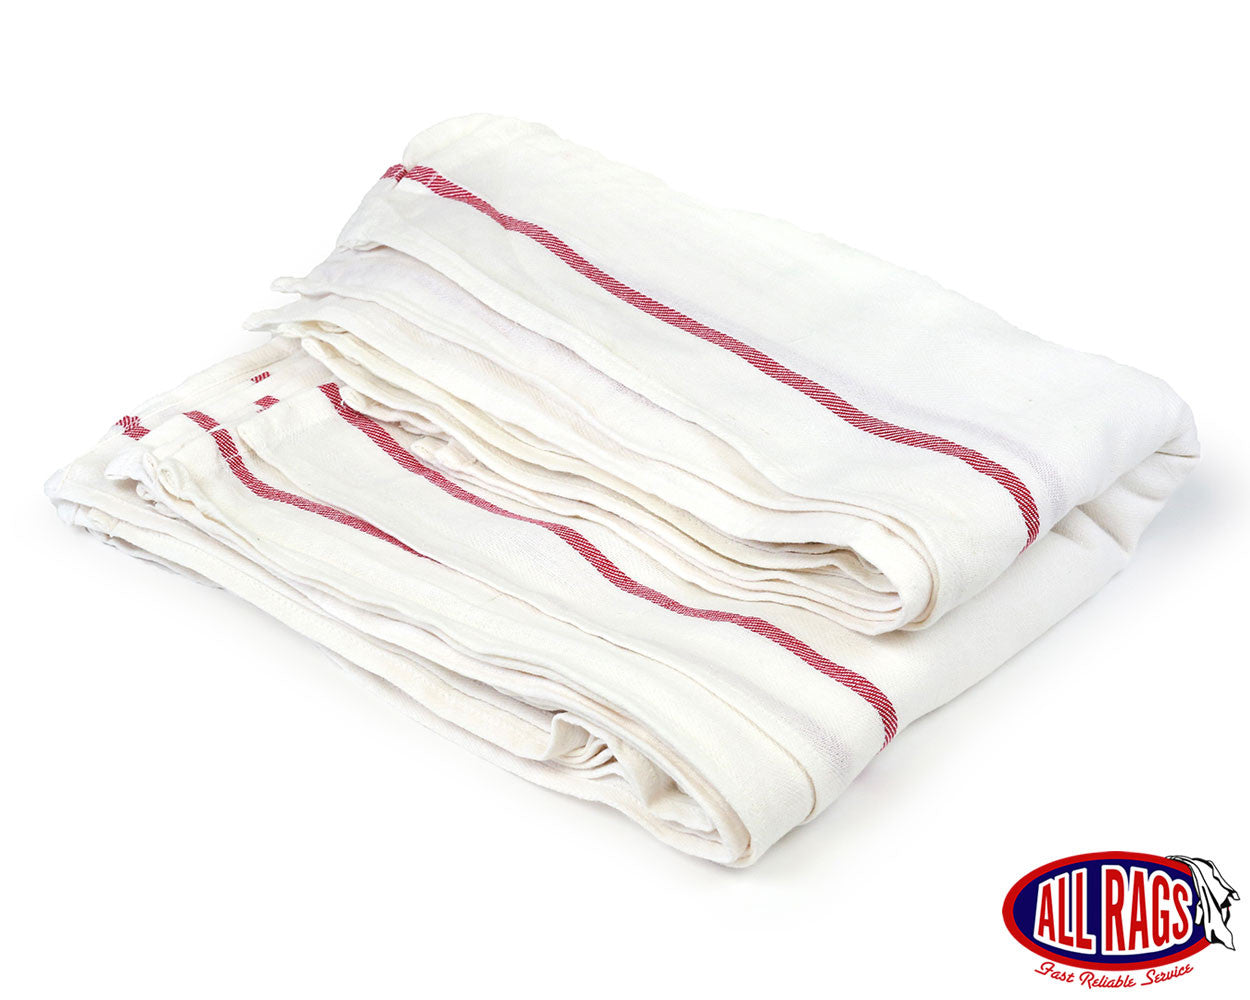 https://allrags.com/cdn/shop/products/NHB-New-Cotton-Herringbone-Dishcloth-Towel_1400x.jpg?v=1494455903